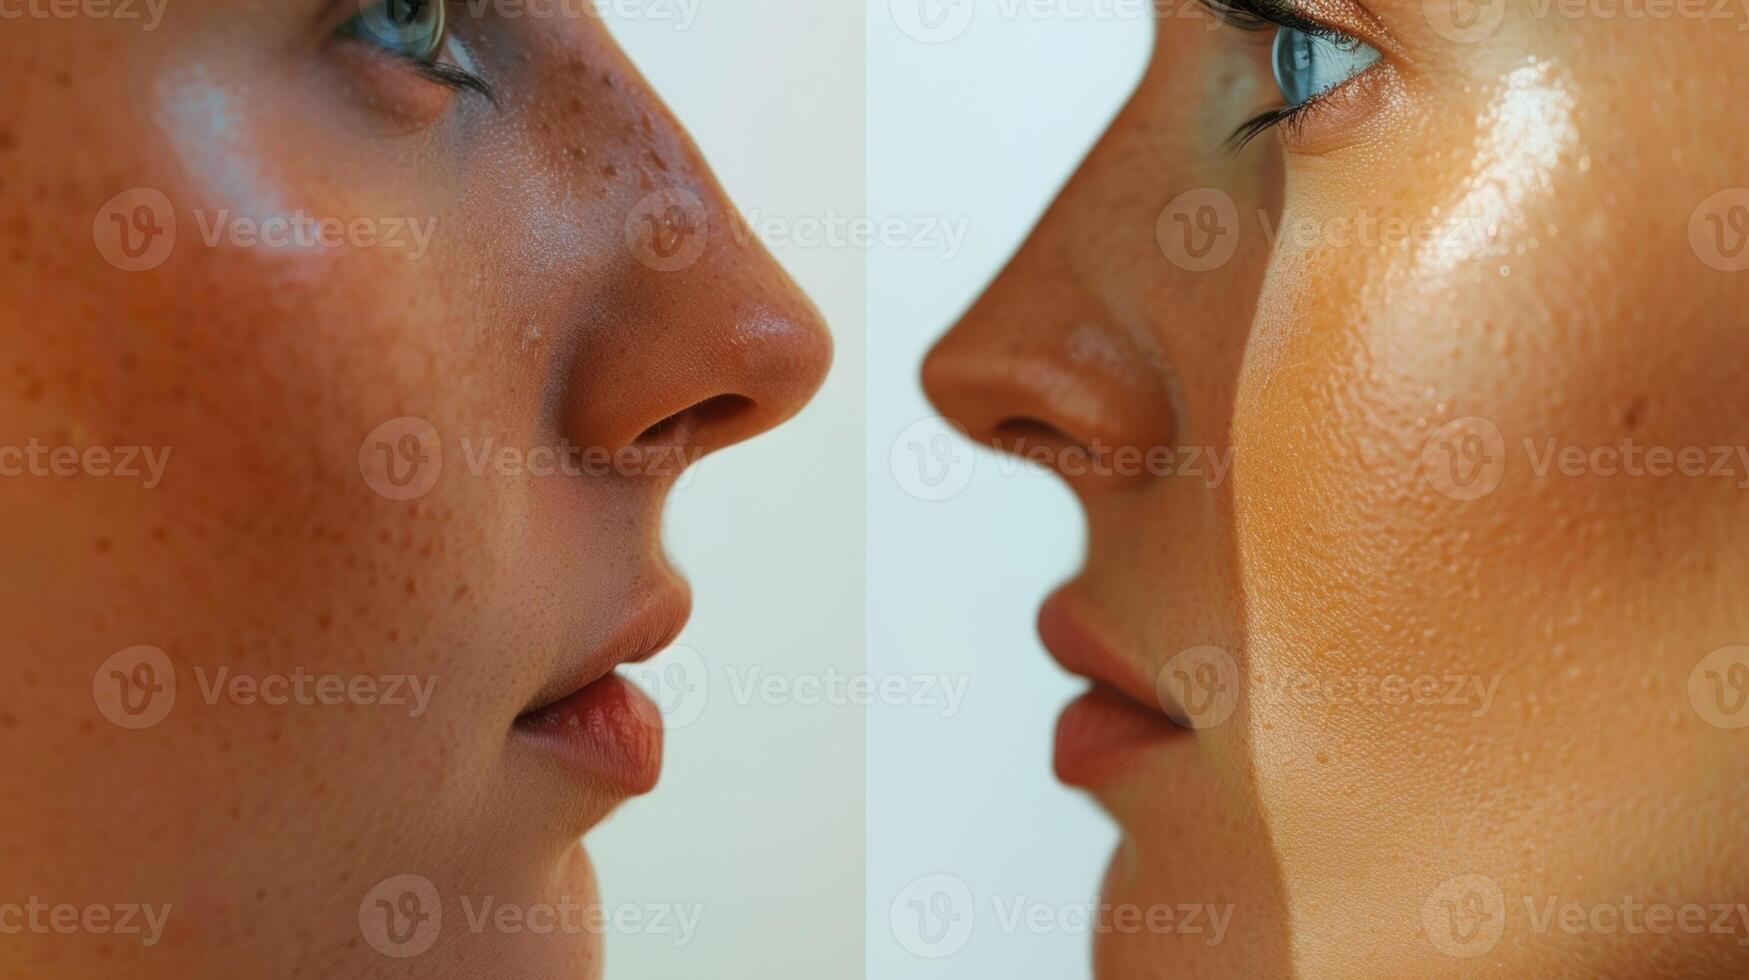 une cote à cote Comparaison de une les personnes visage avant et après poids perte démontrant le impact de infrarouge saunas sur global santé et apparence. photo